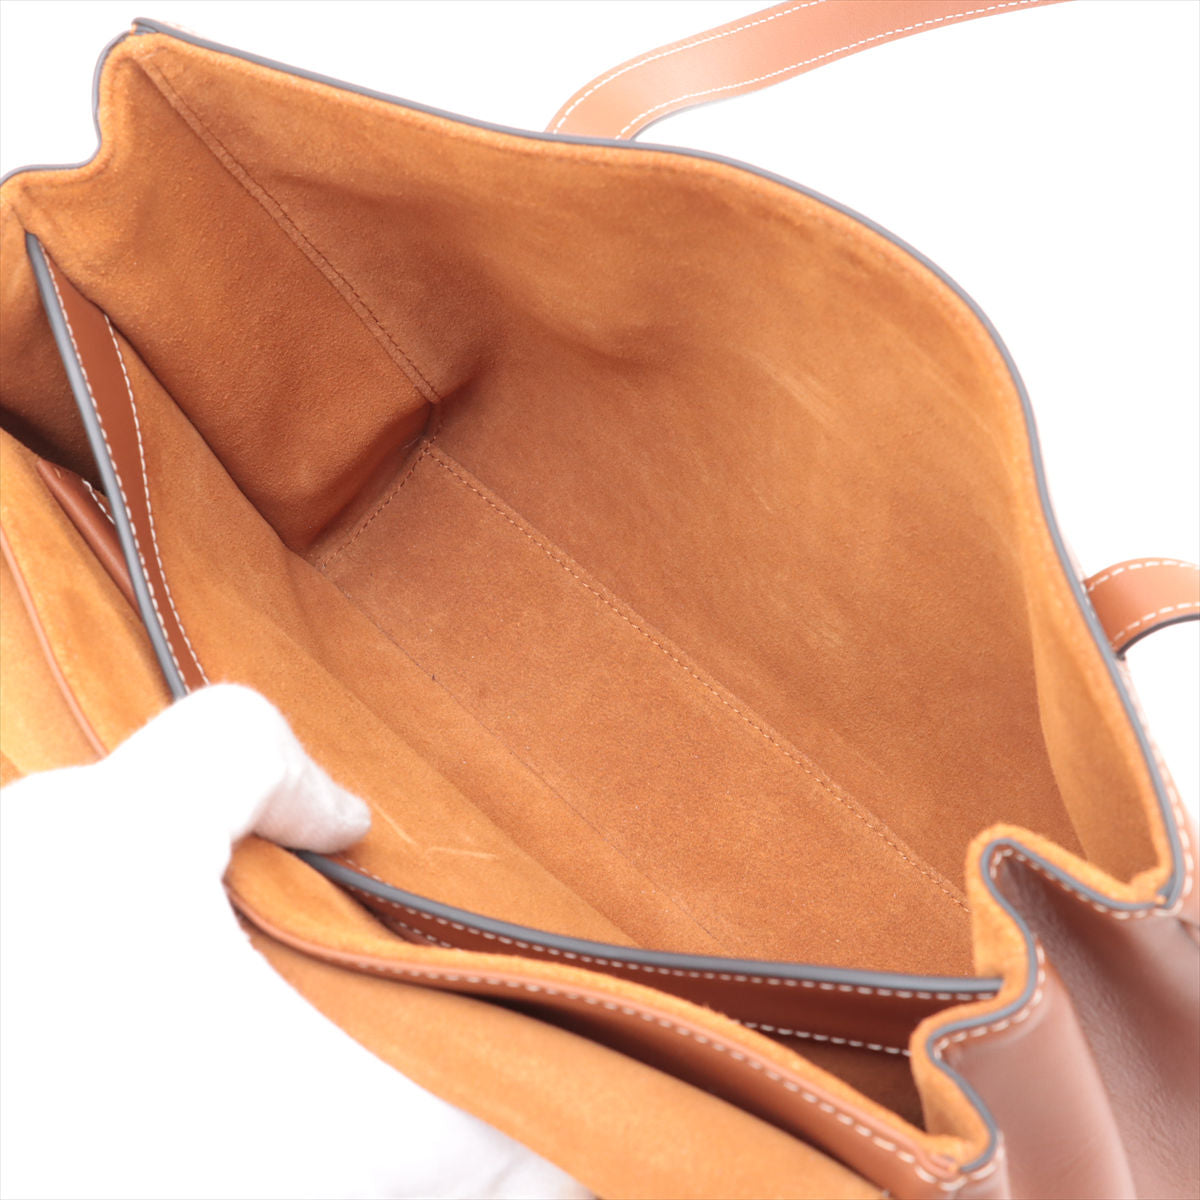 Celine St 16 Seas Medium Leather Shoulder Bag Brown